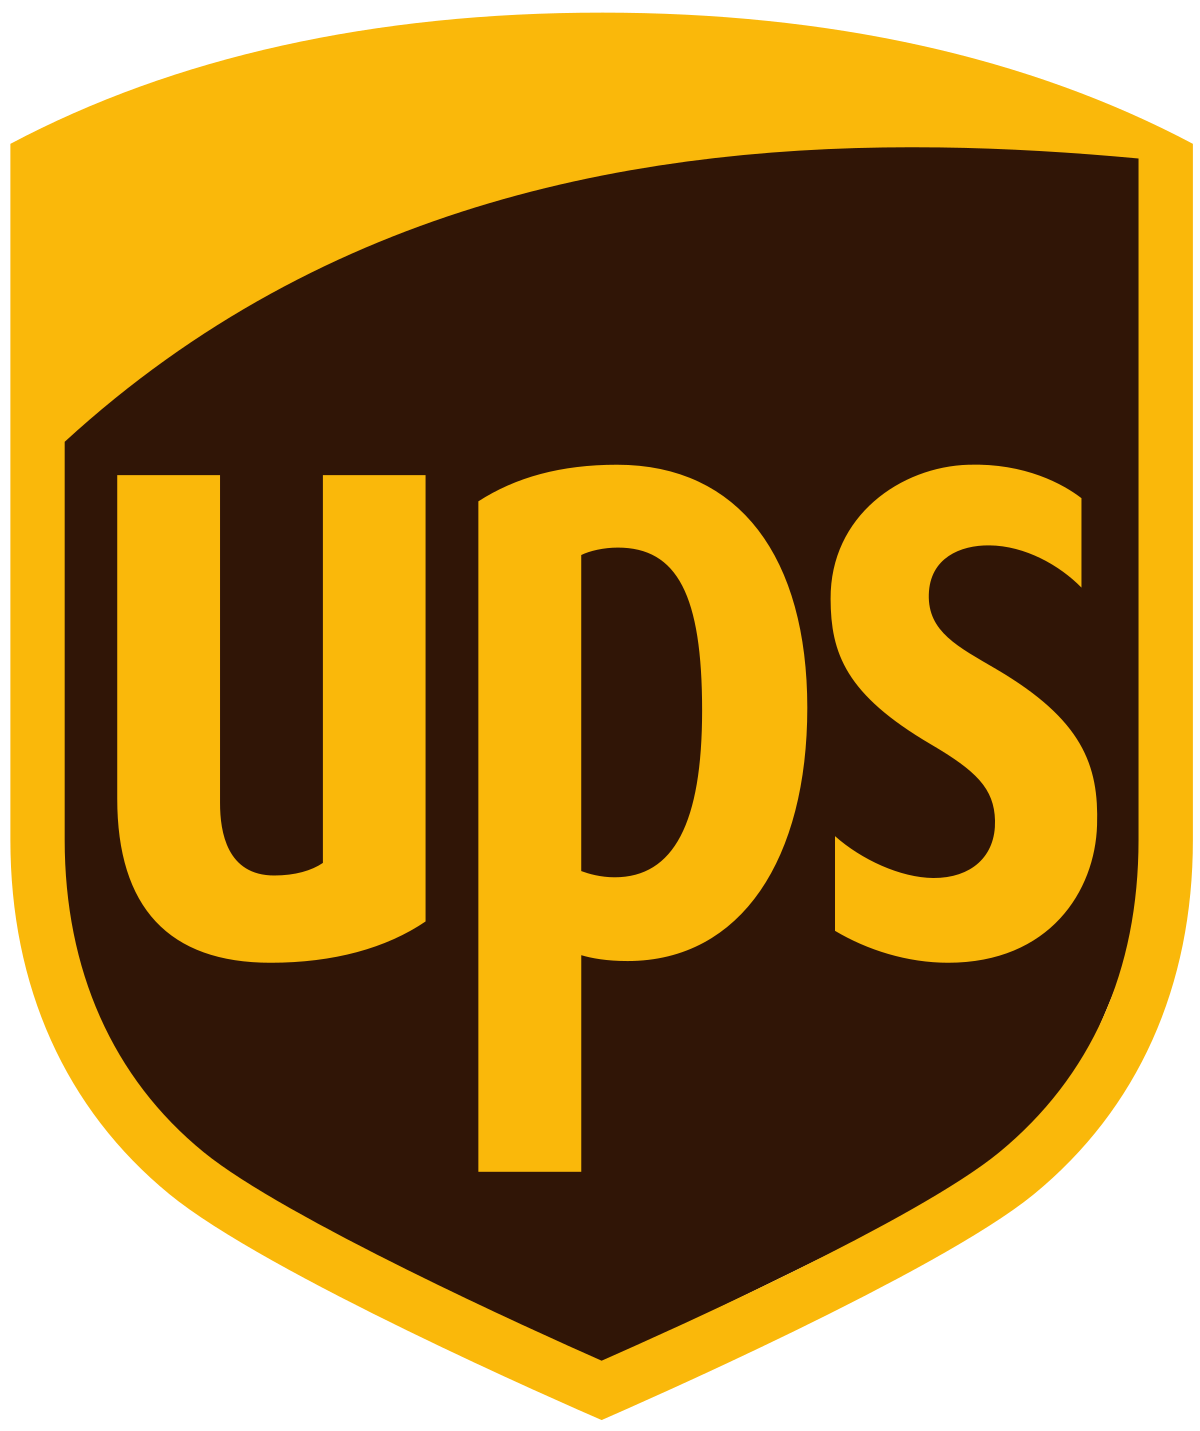 United Parcel Service – Wikipedia, wolna encyklopedia